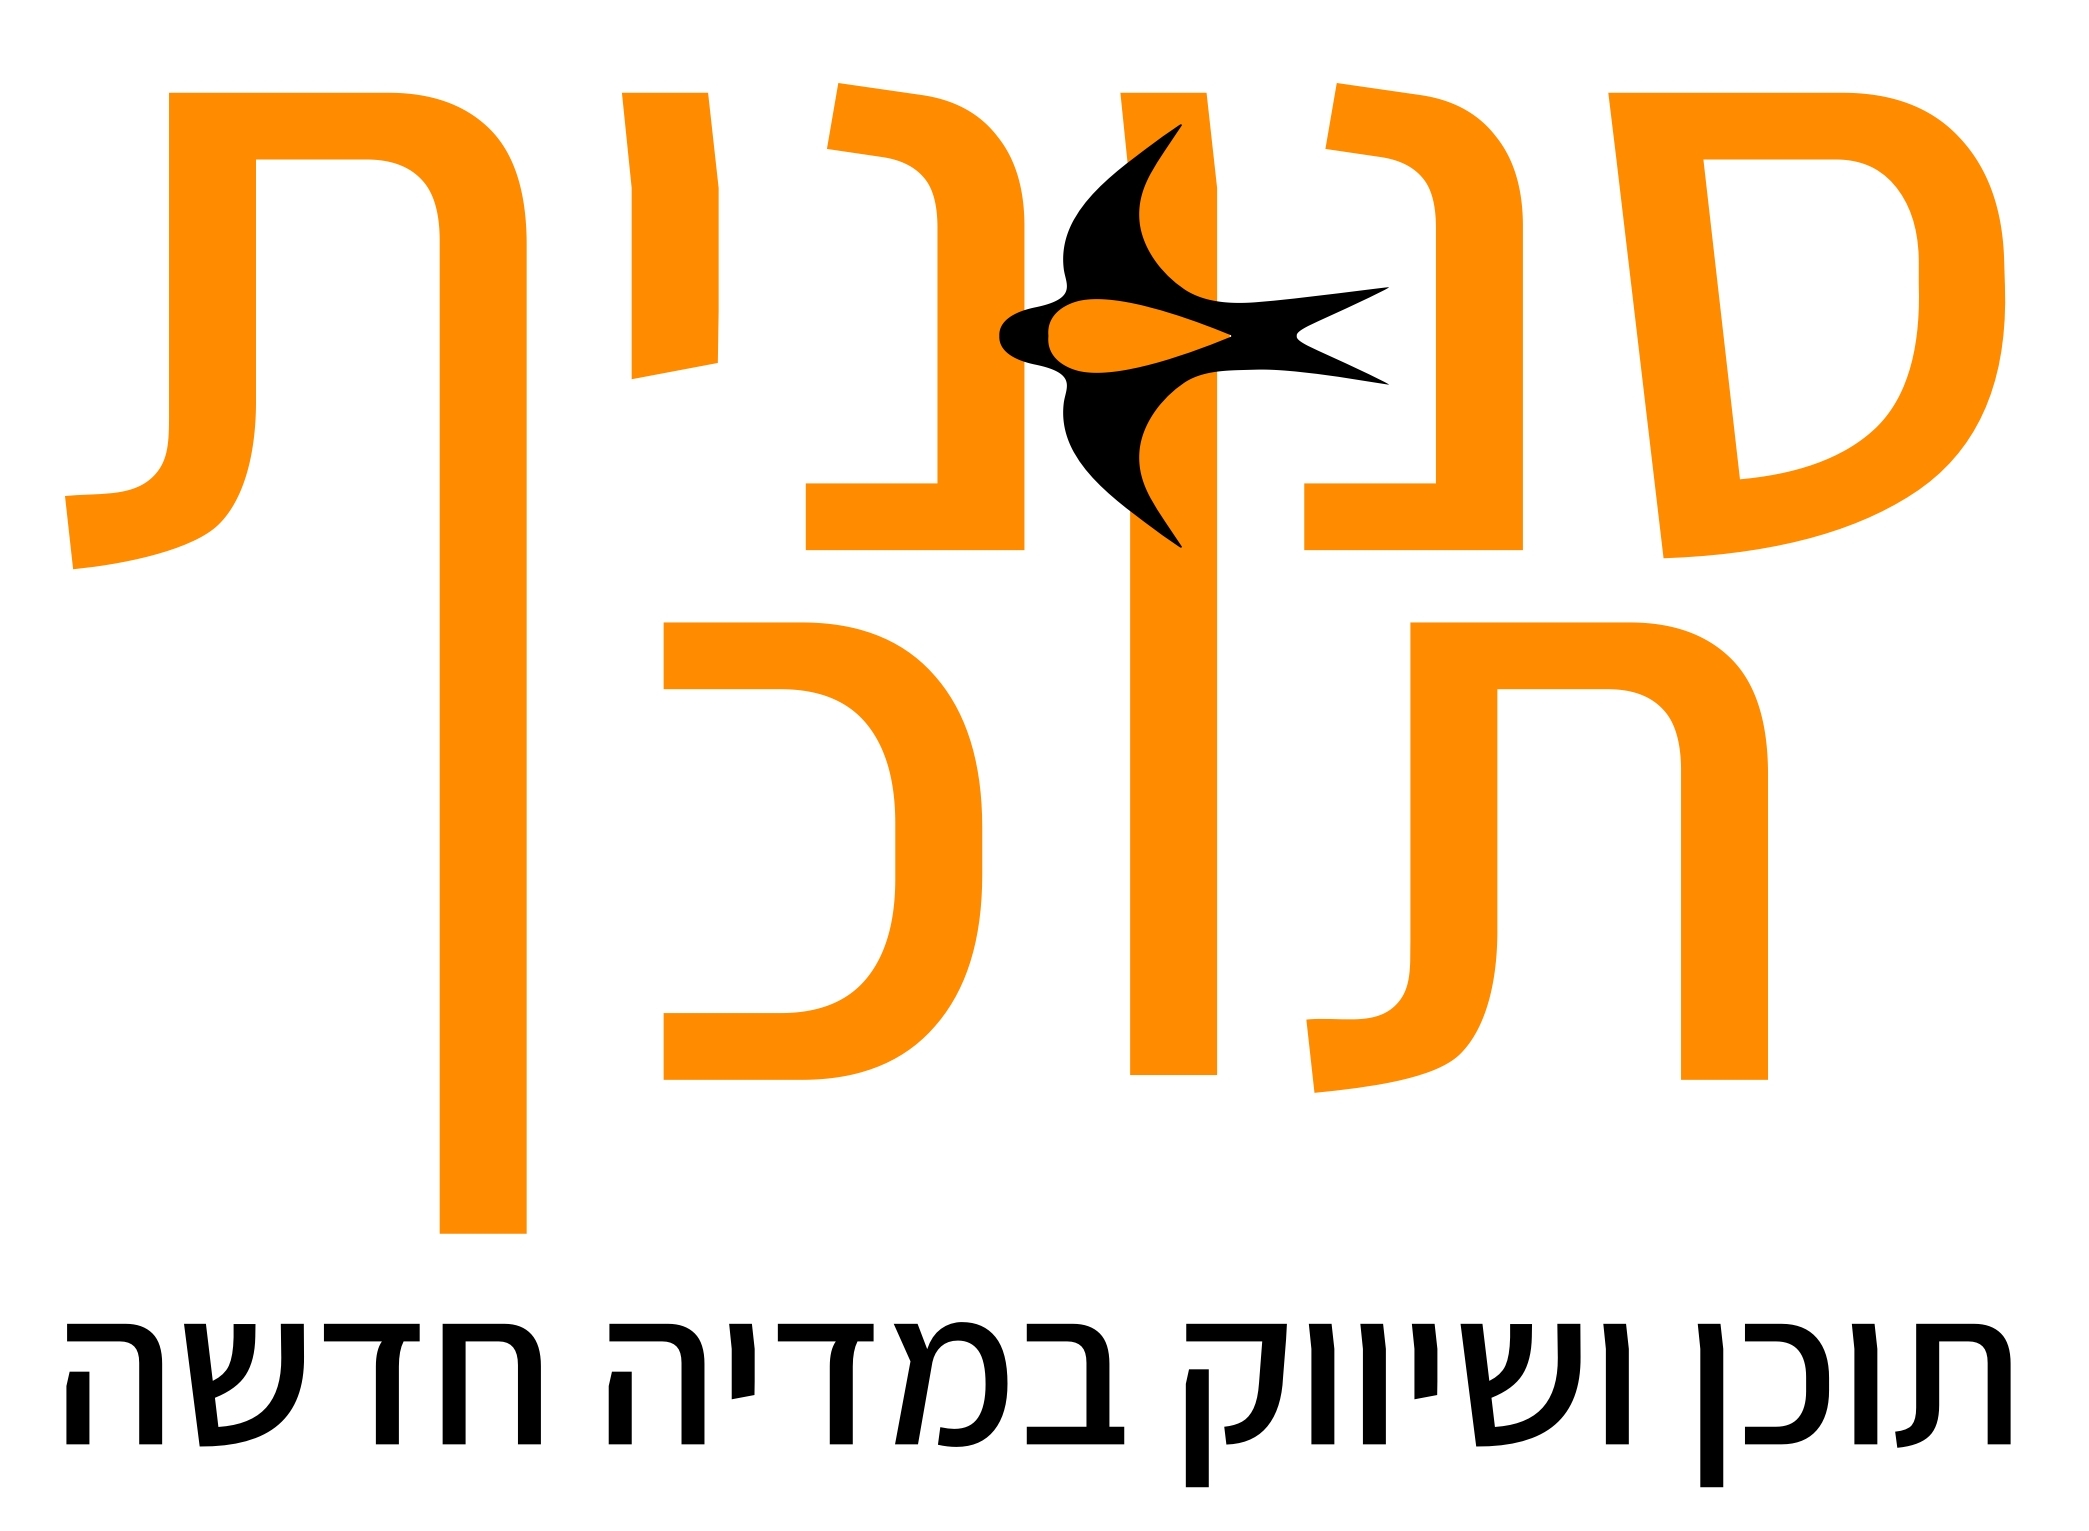 ynet – הכתבות שלי